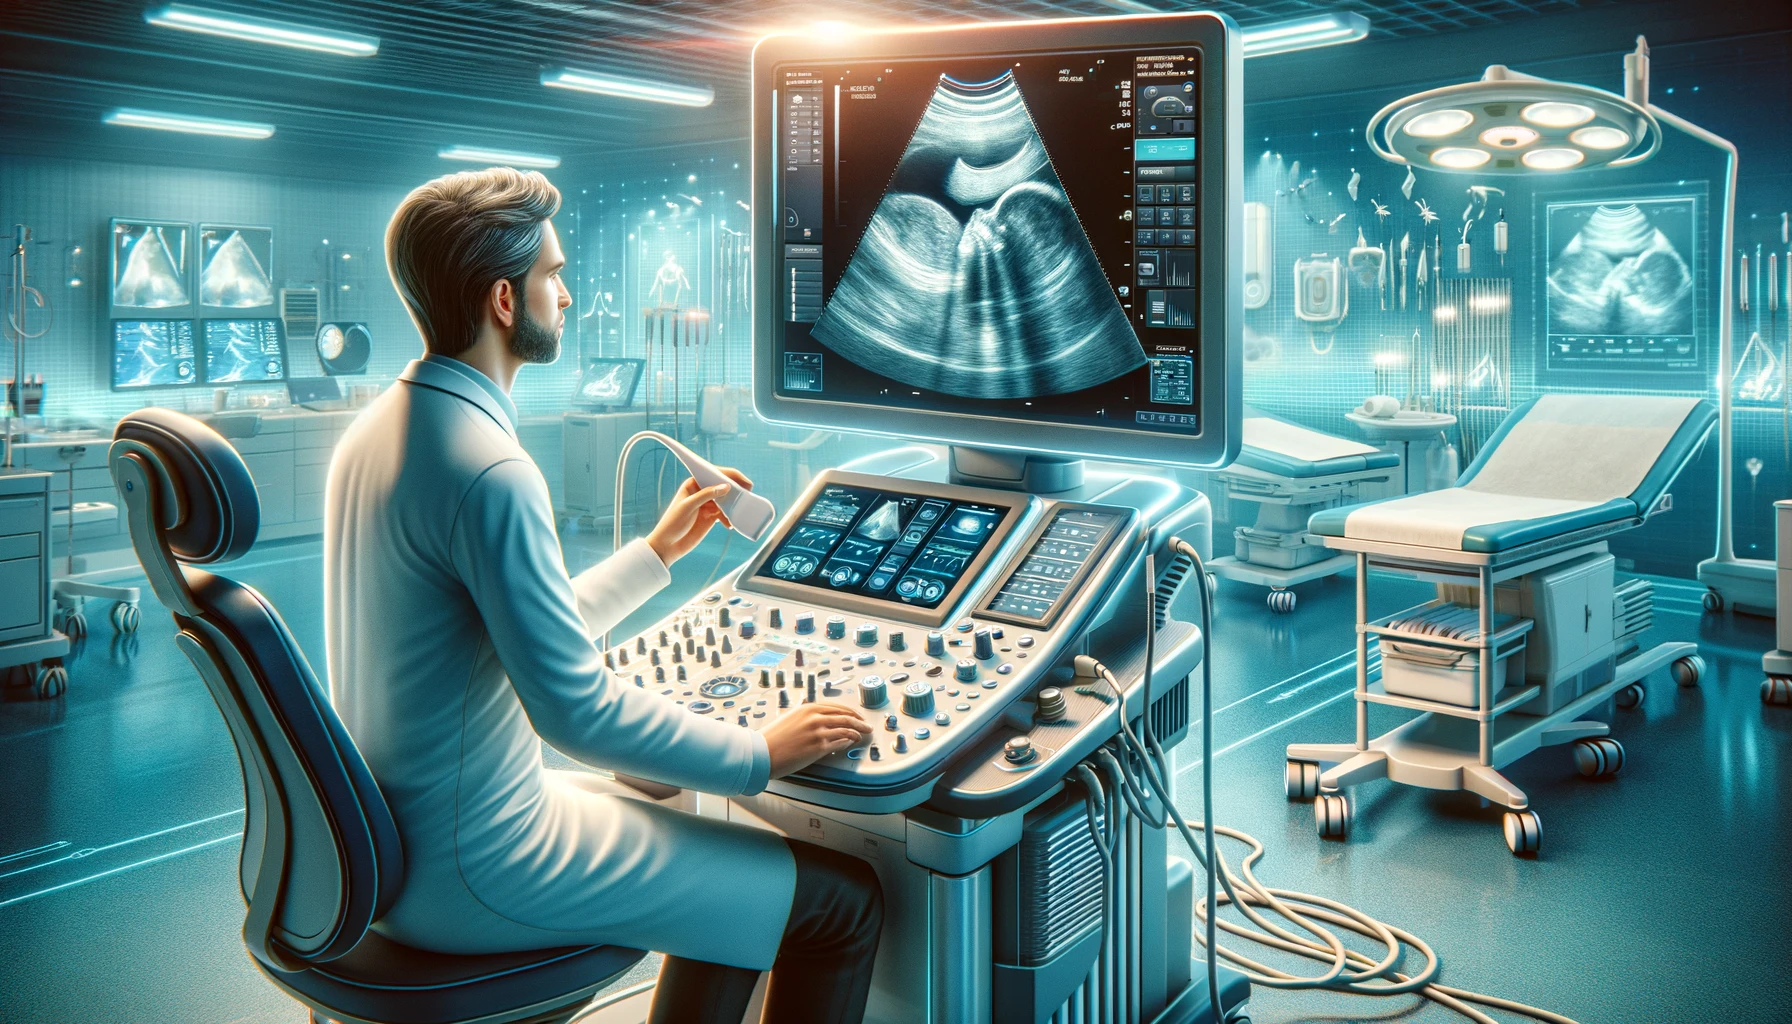 Ultrasound technology